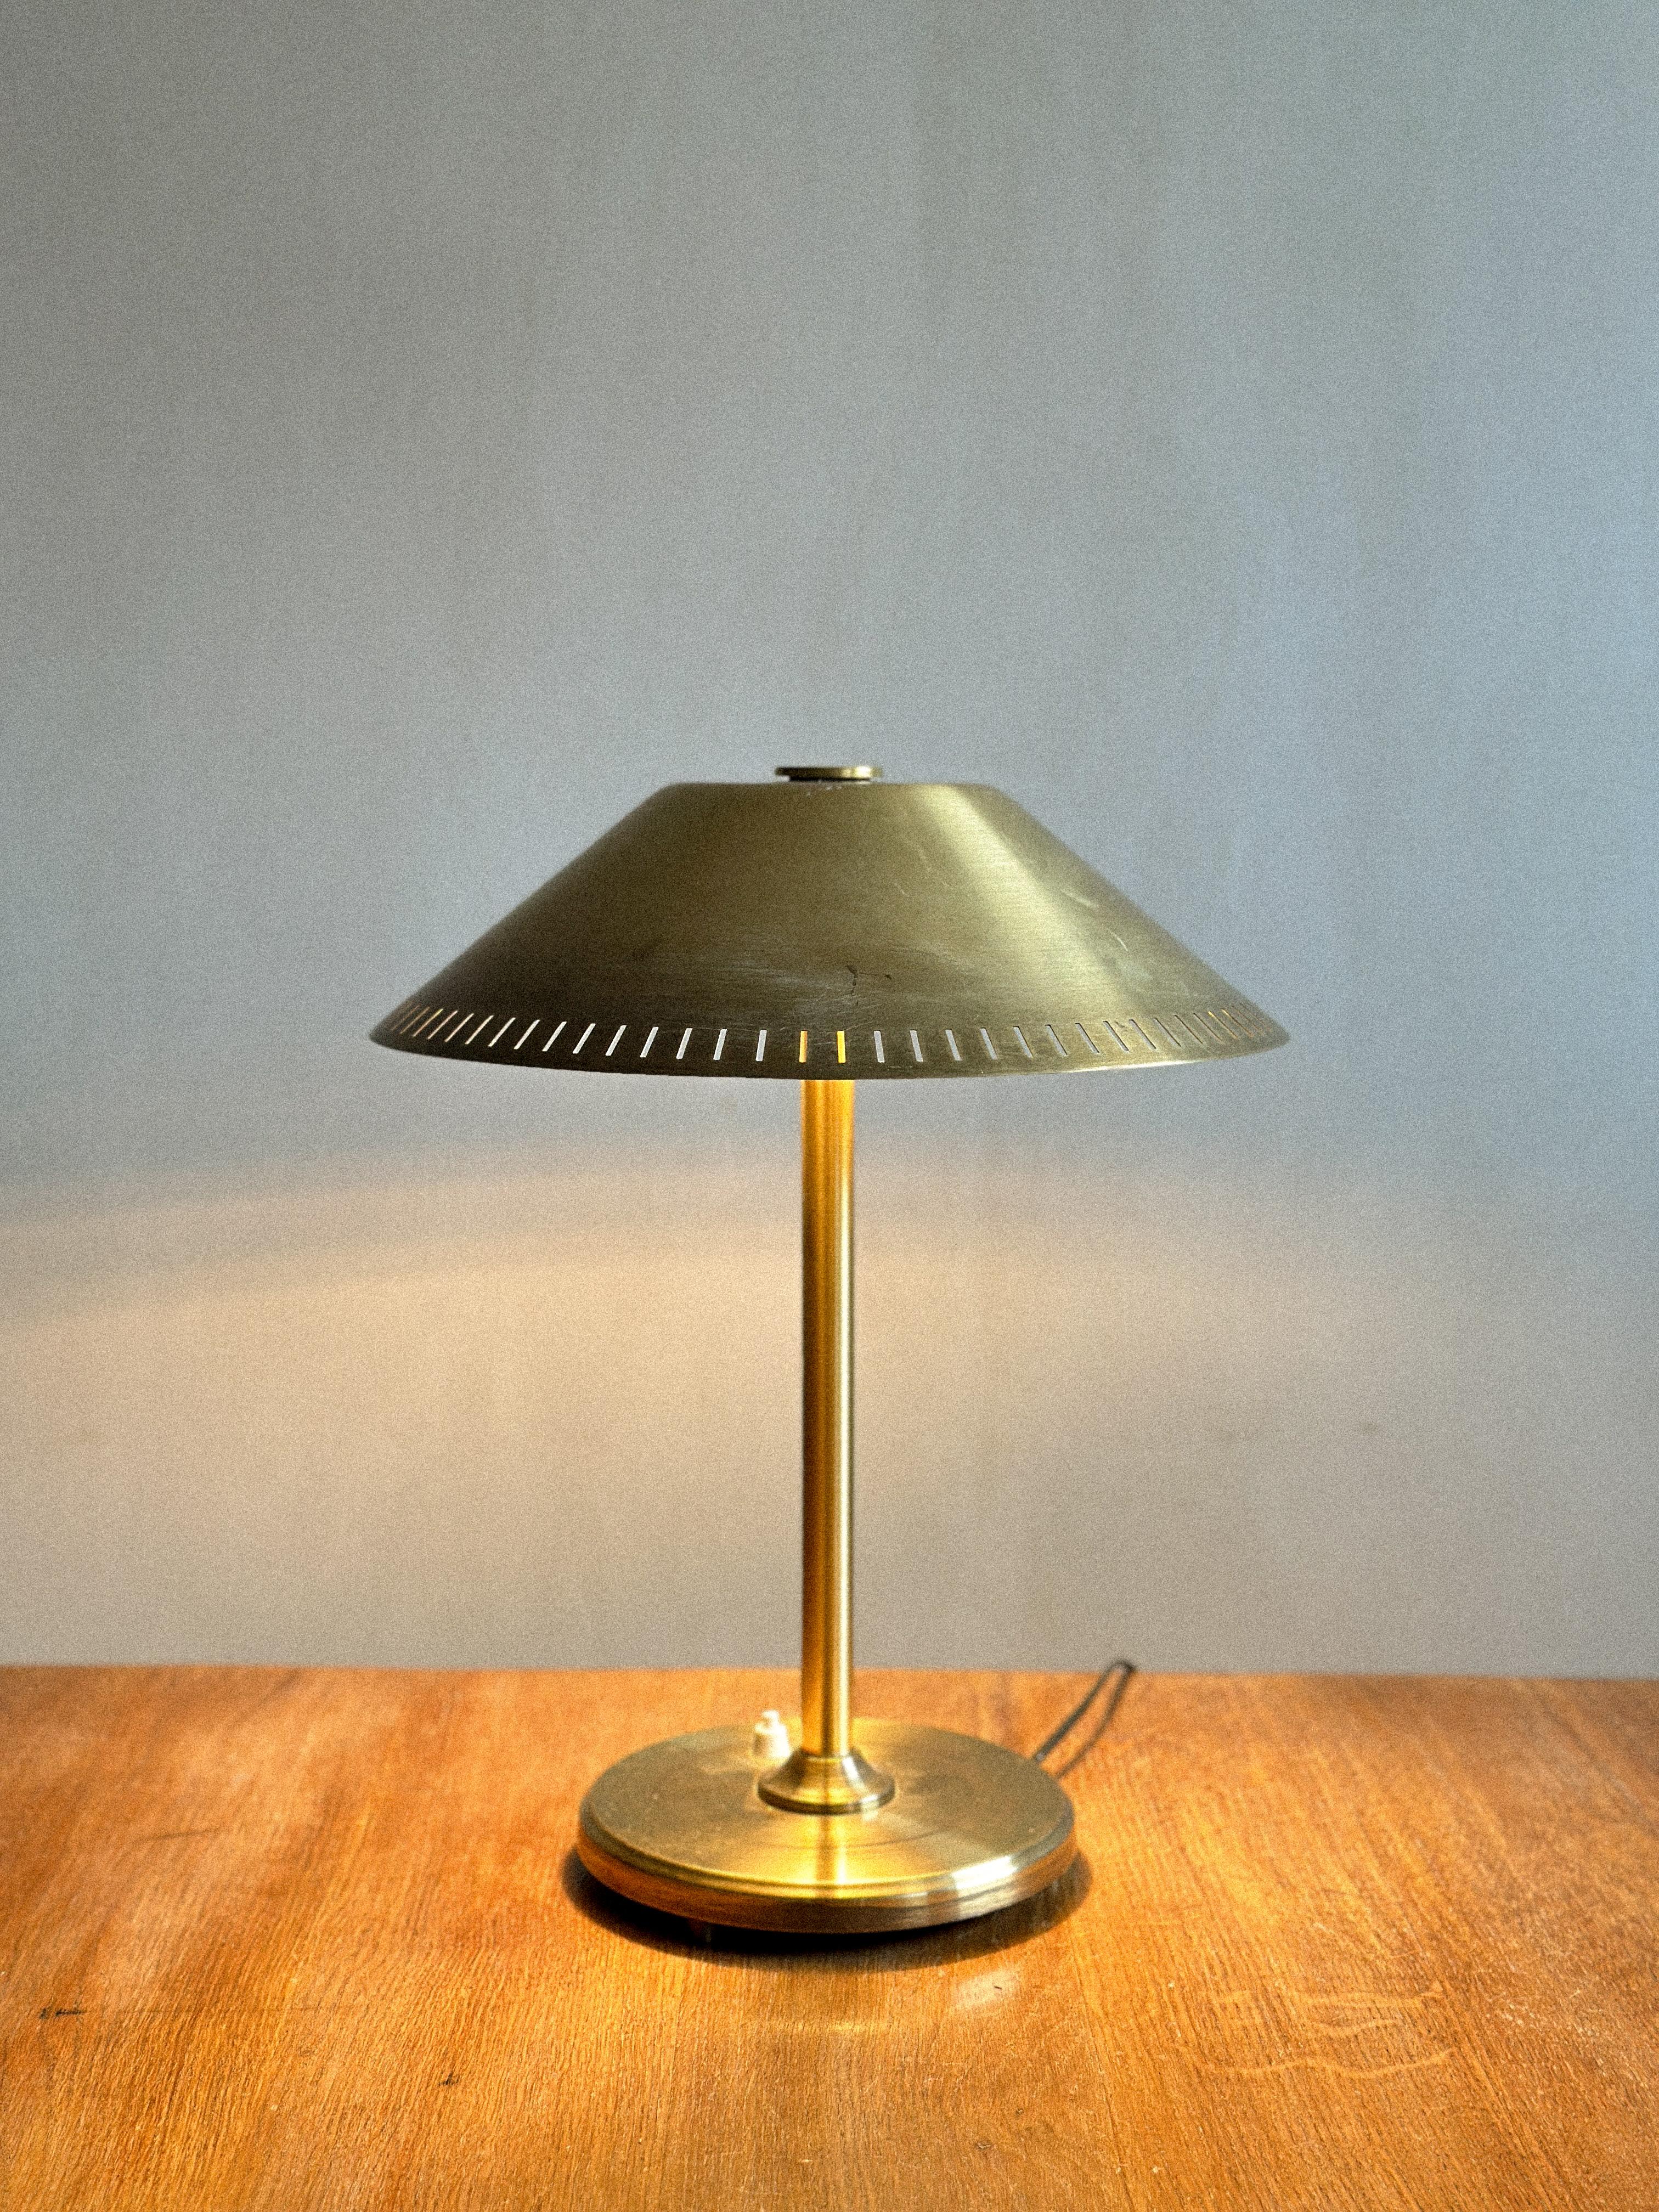 Skandinavische Mid-Century-Tischlampe aus Messing, 1950er Jahre (20. Jahrhundert)